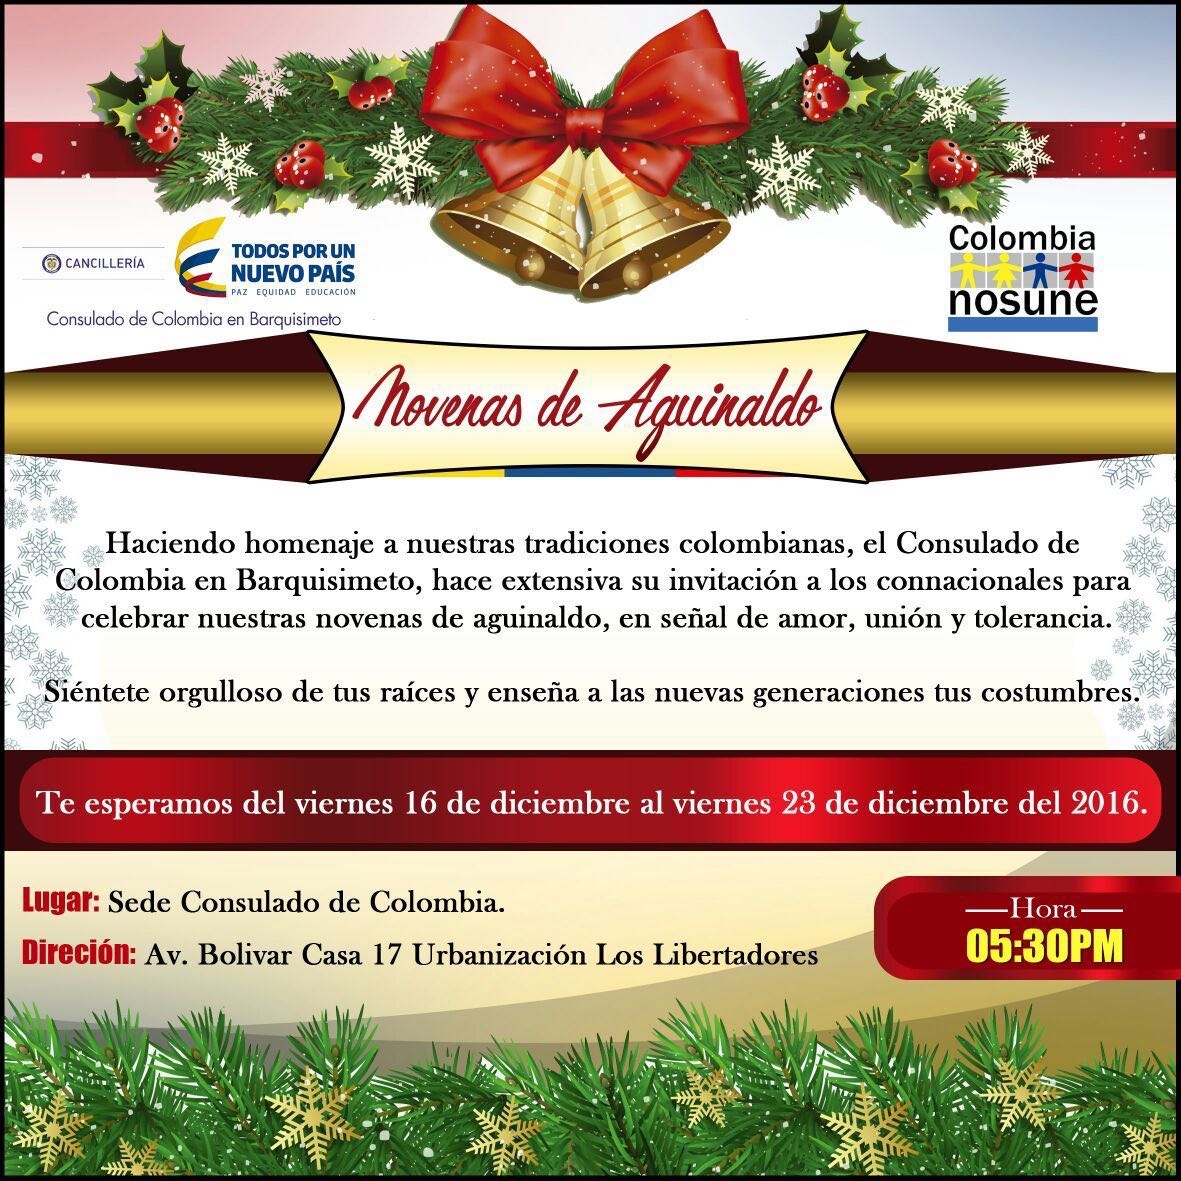 Consulado de Colombia en Barquisimeto invita a celebrar las novenas de aguinaldos